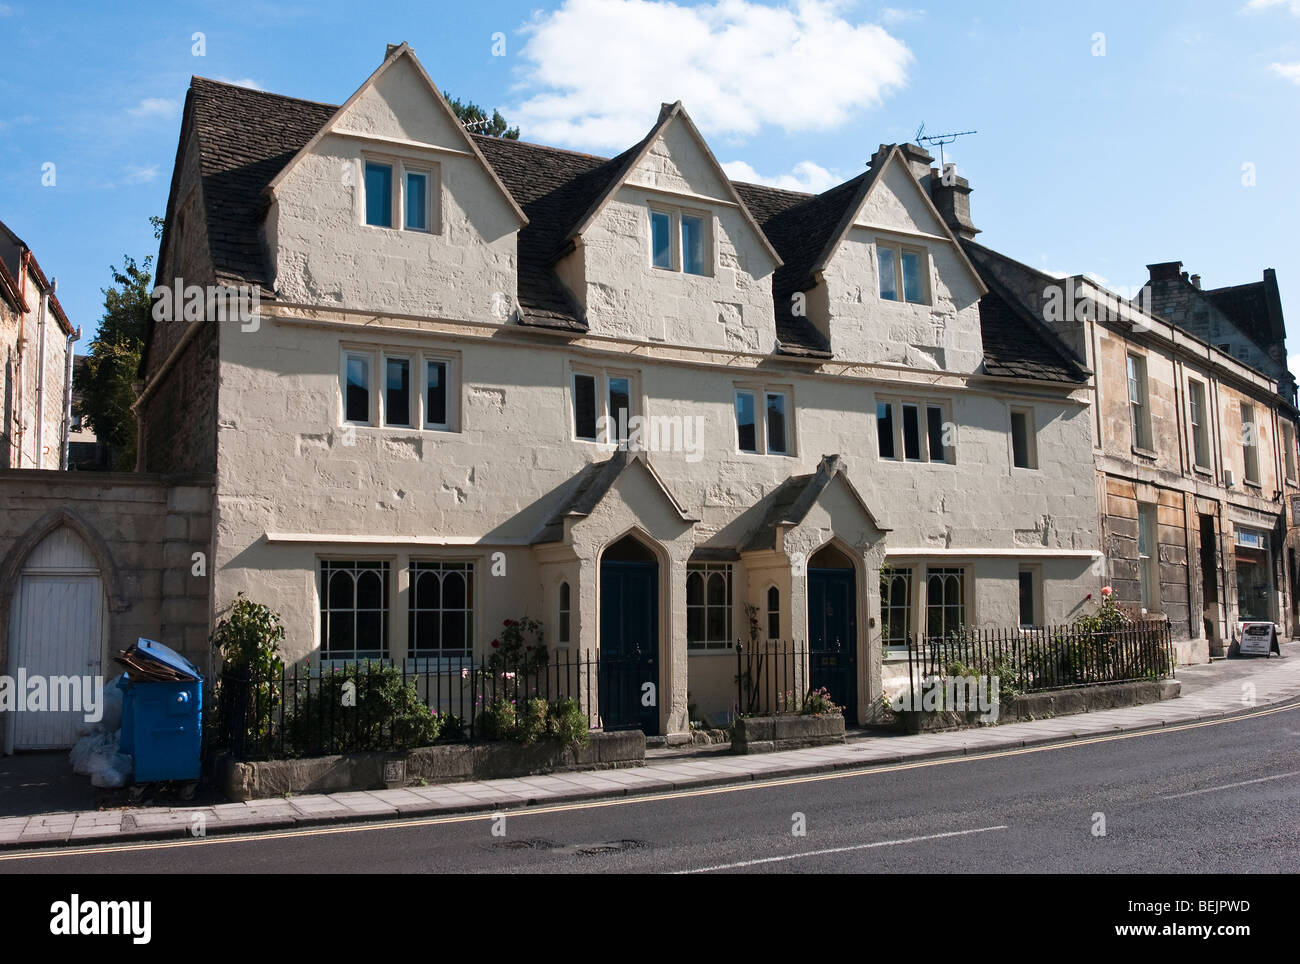 Vieilles maisons en terrasse dans la région de Bradford on Avon Wiltshire England UK UE Banque D'Images